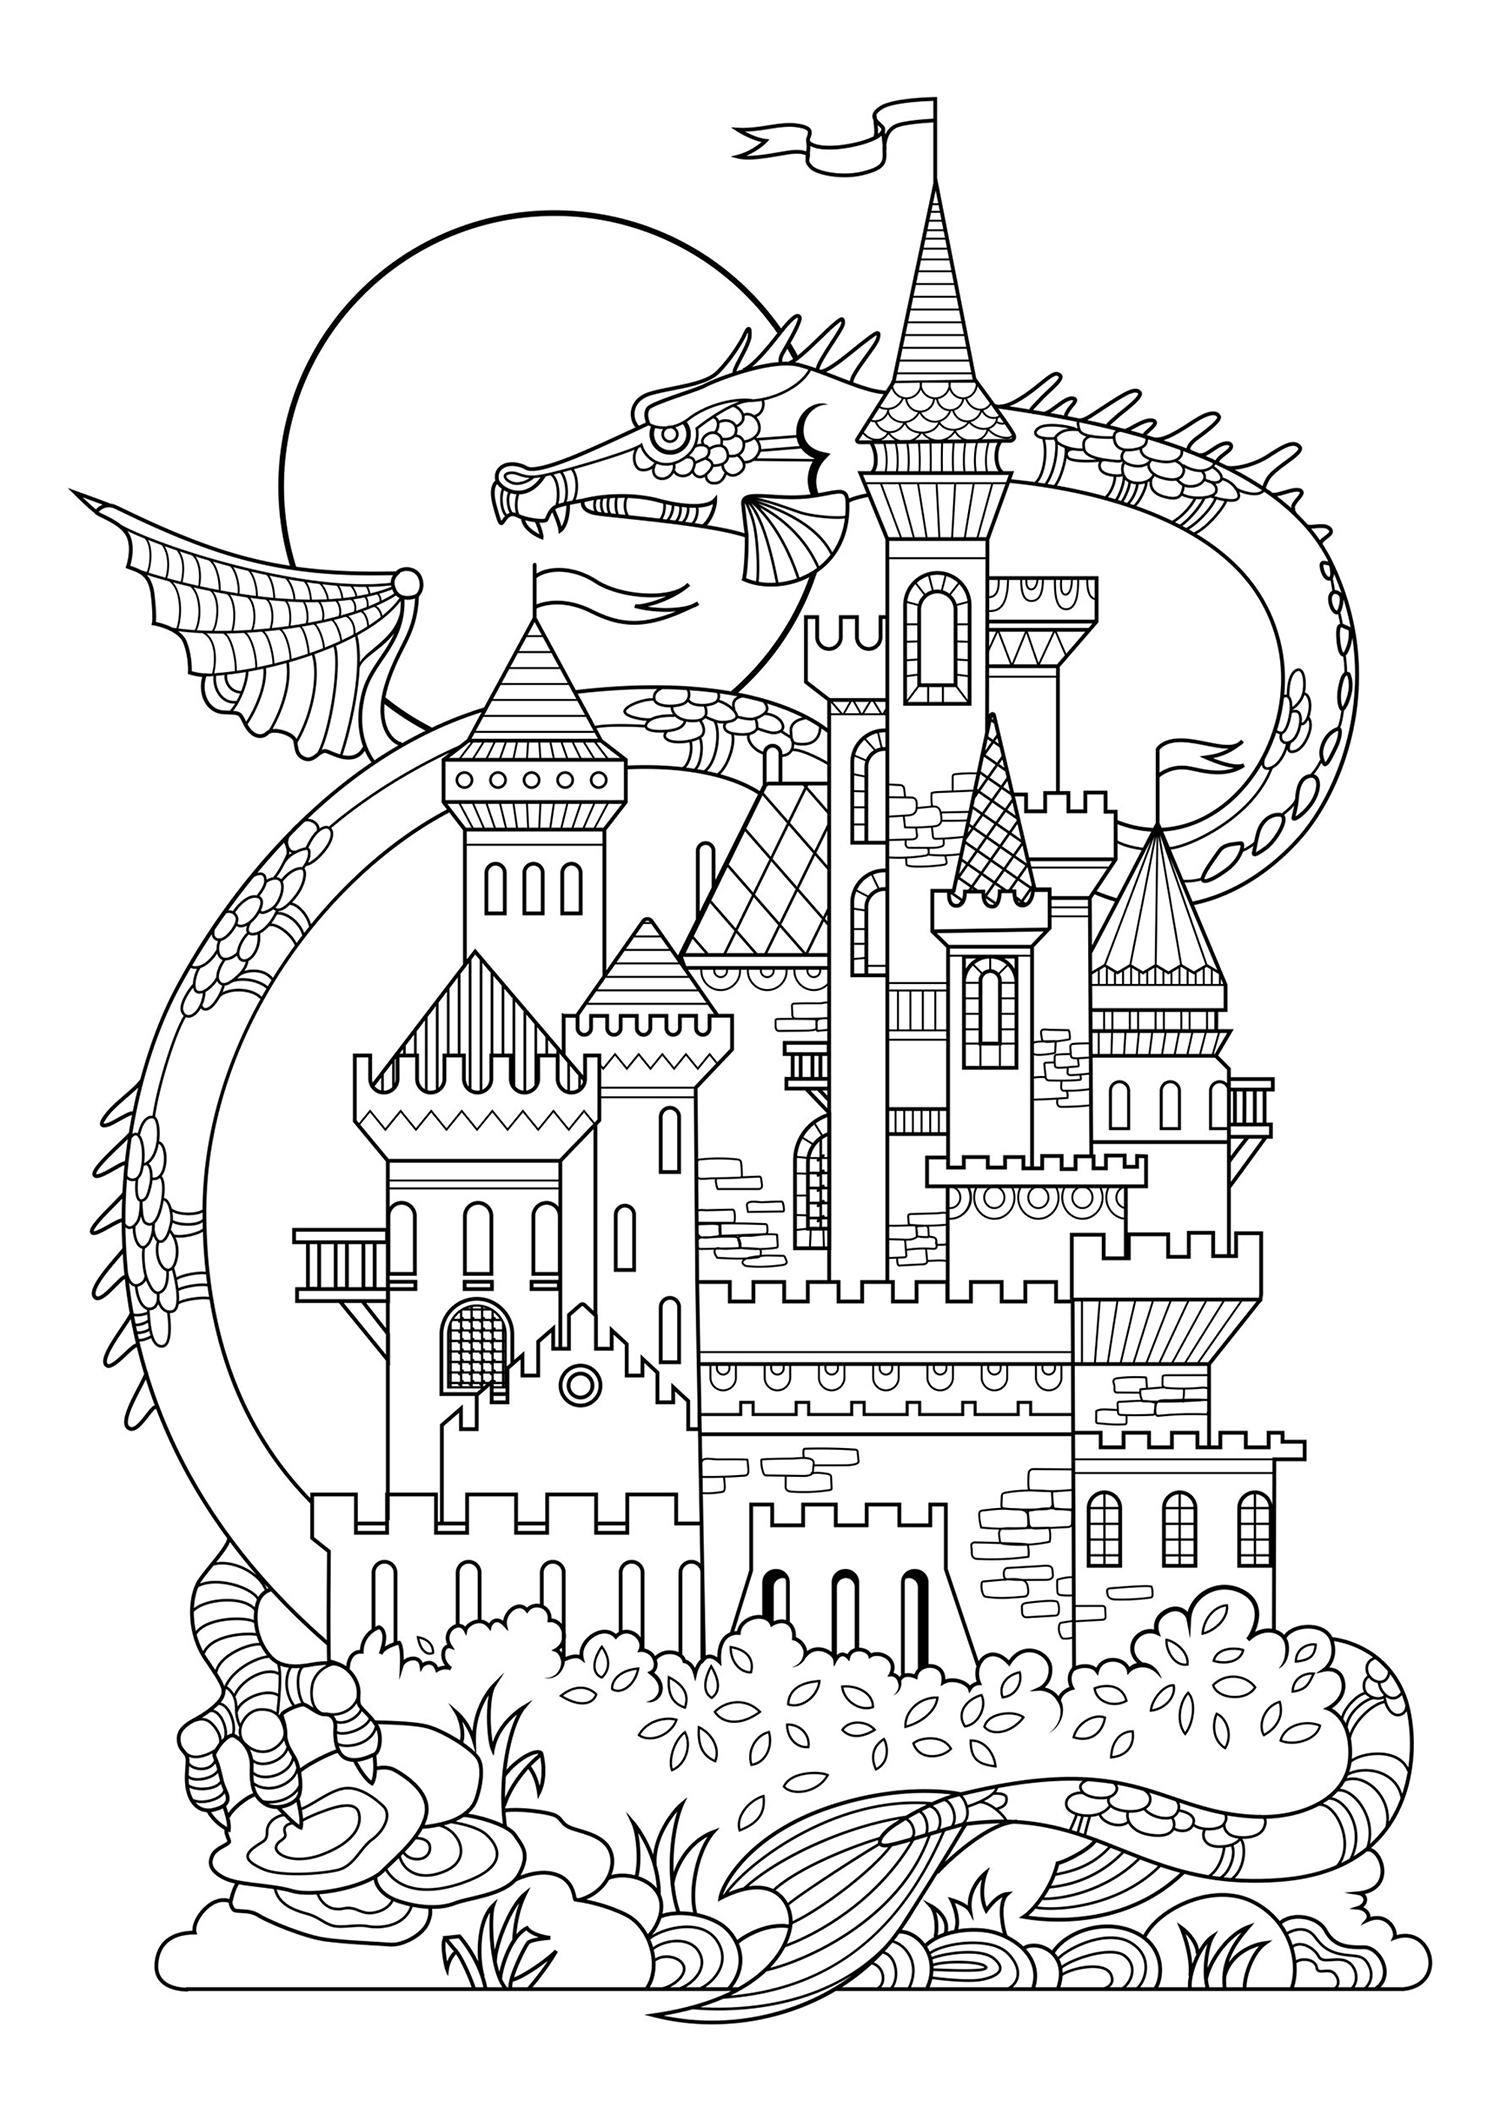 Un bel castello da fiaba, con un drago gigante sullo sfondo!